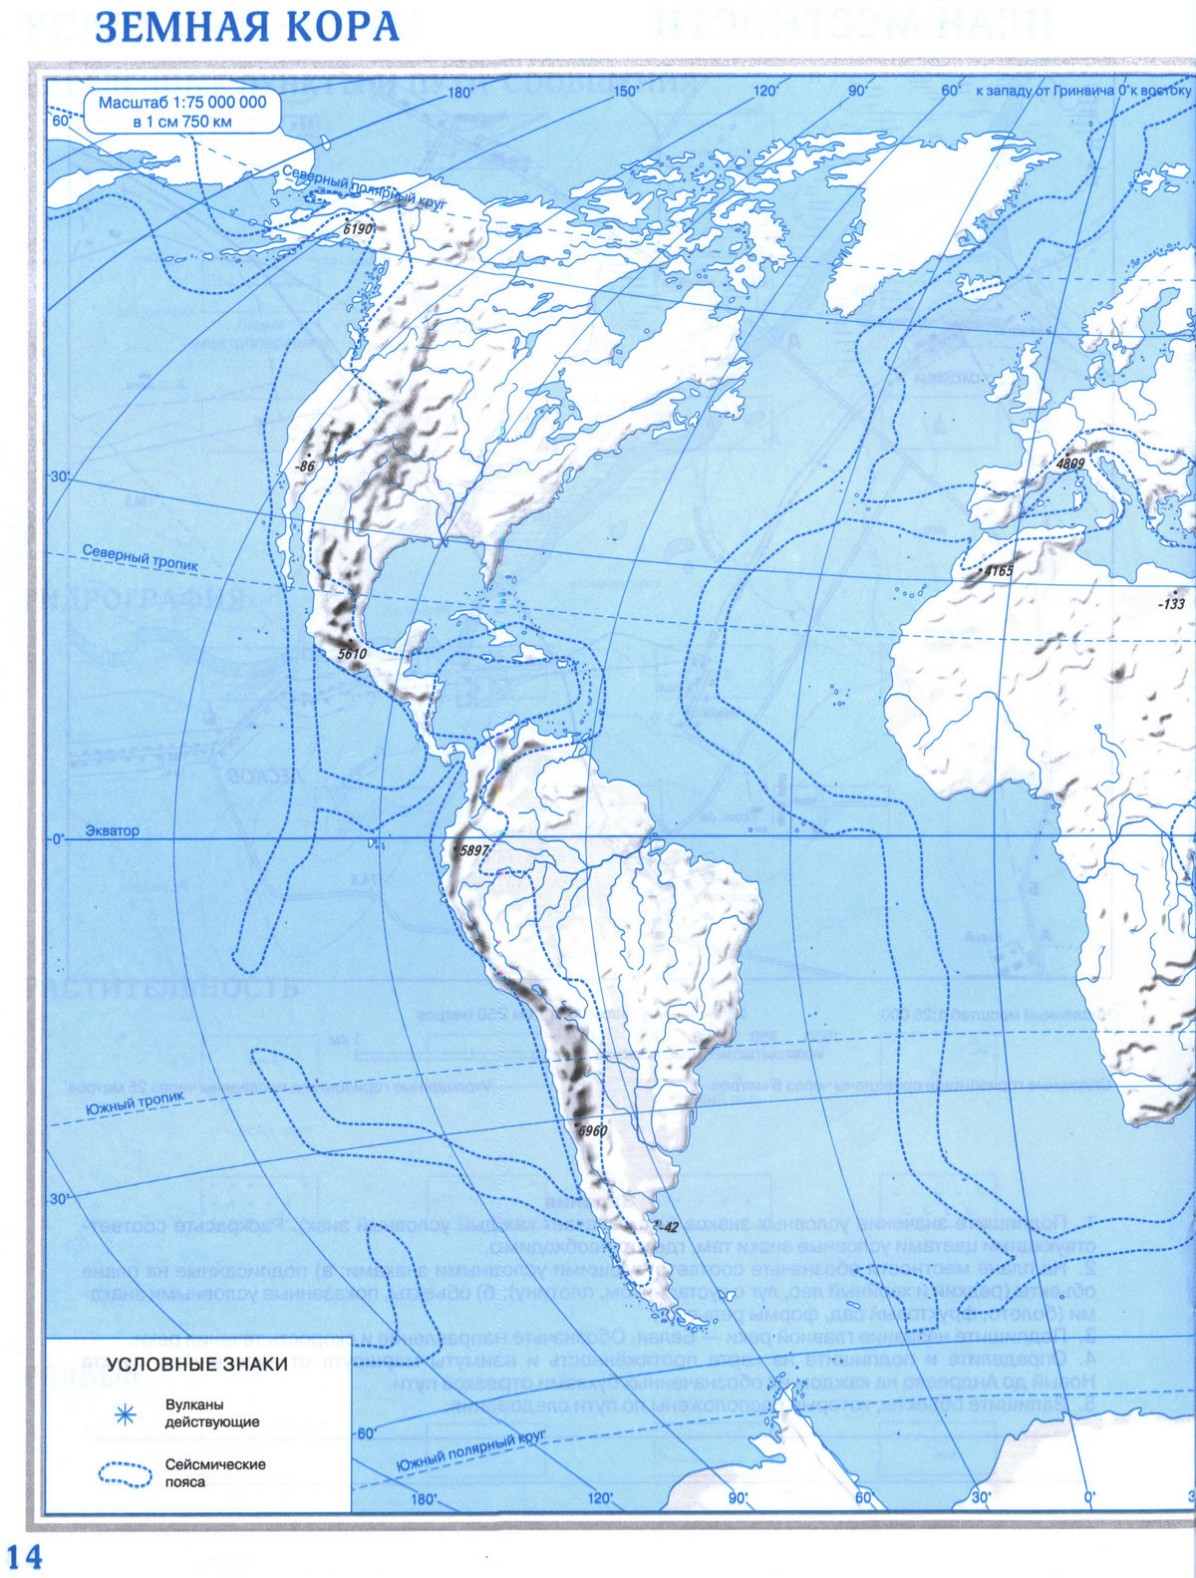 Мировой океан температура соленость рыболовство всемирное наследие контурная карта 6 класс стр 10 11